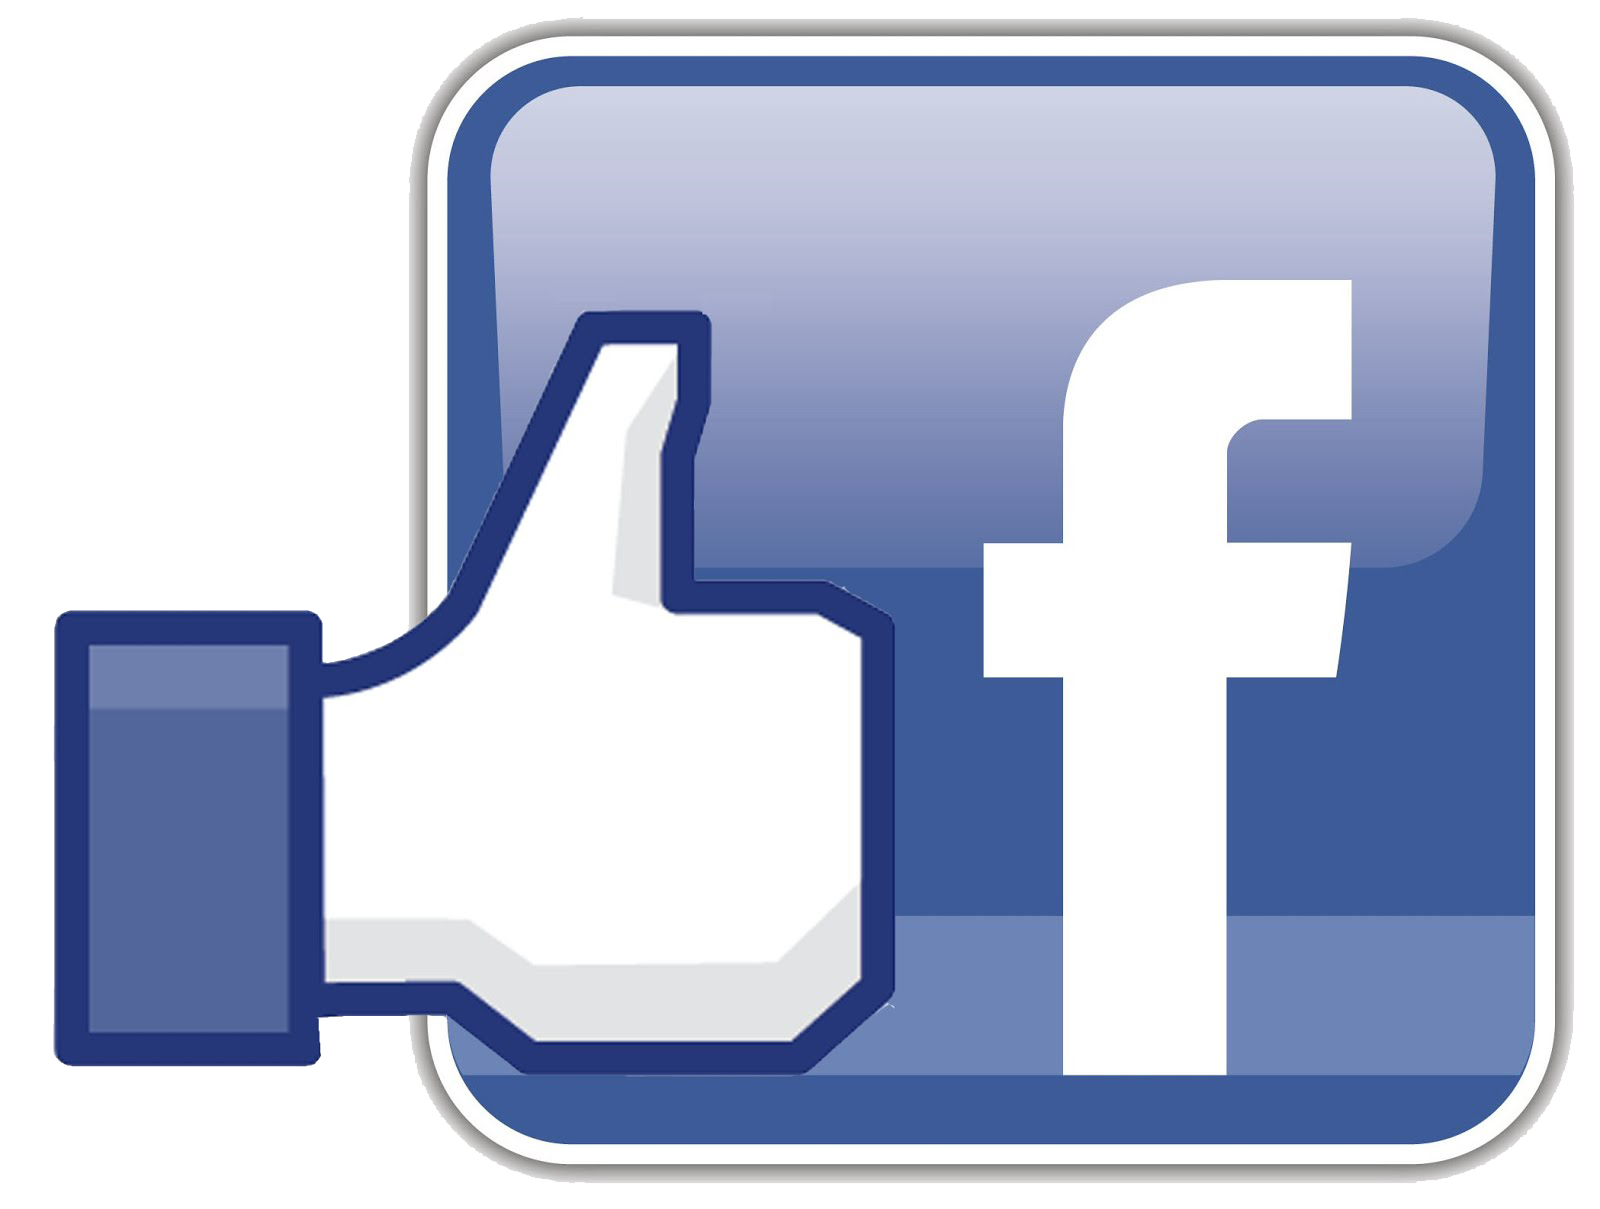 Download Facebook Logo Transparent Background Hq Png Image Freepngimg